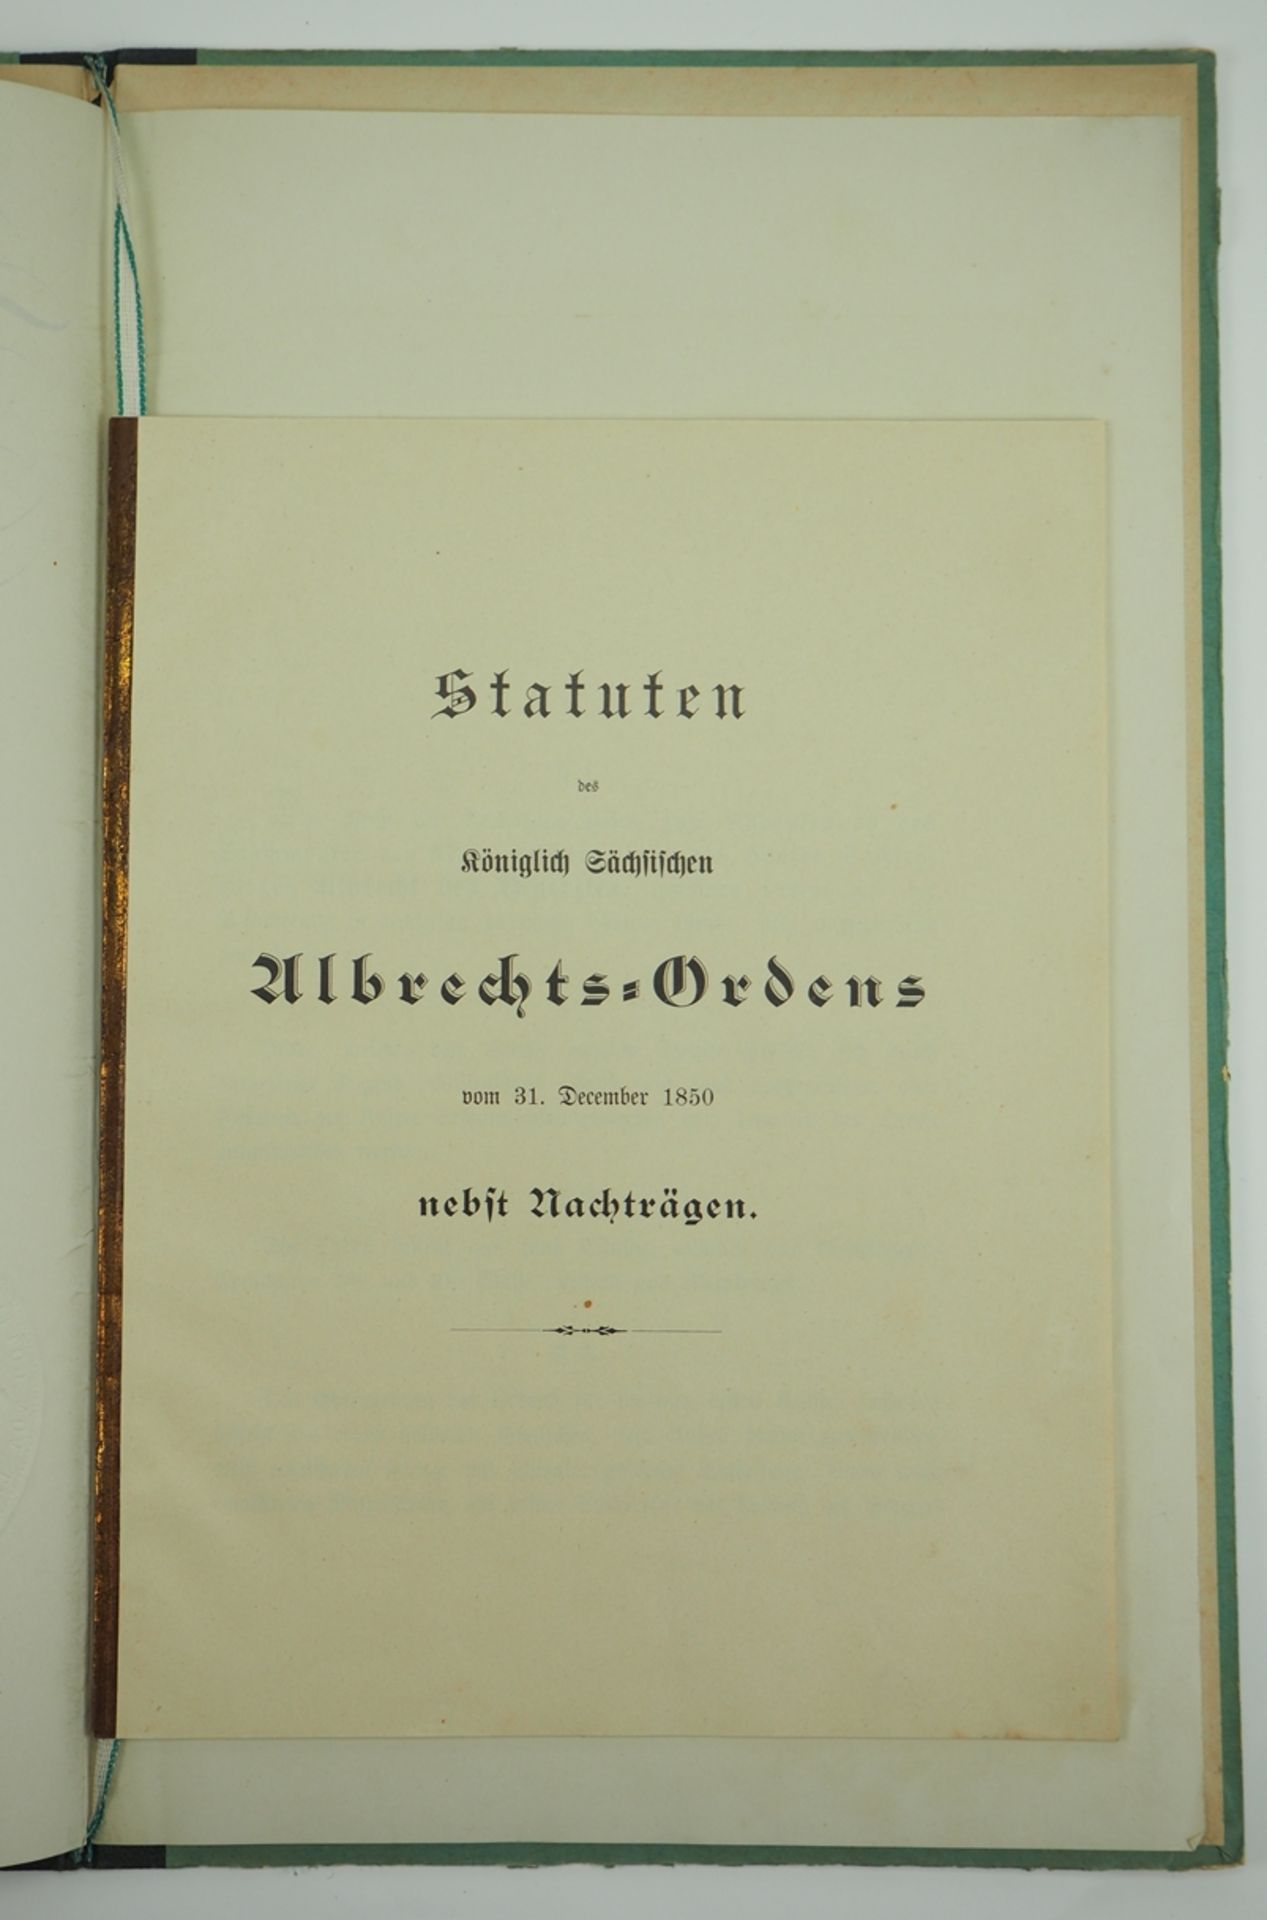 Sachsen: Albrechtskreuz Urkunde für einen Ober-Telegraphenassistenten in Freiburg. - Image 2 of 2